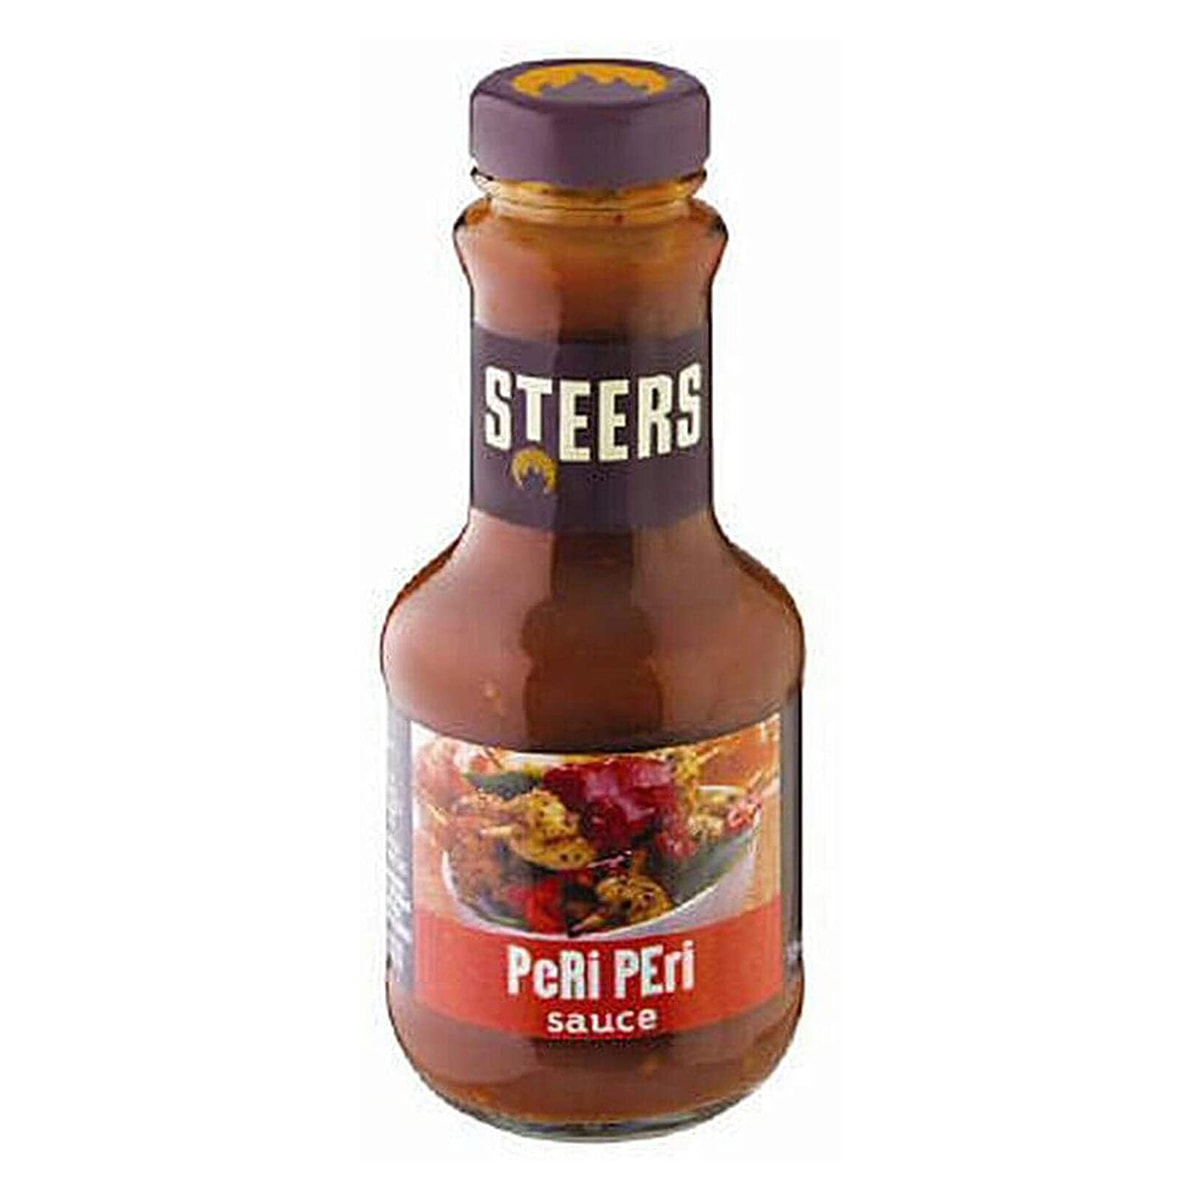 Buy Steers Hot Peri-peri Sauce - 375 ml